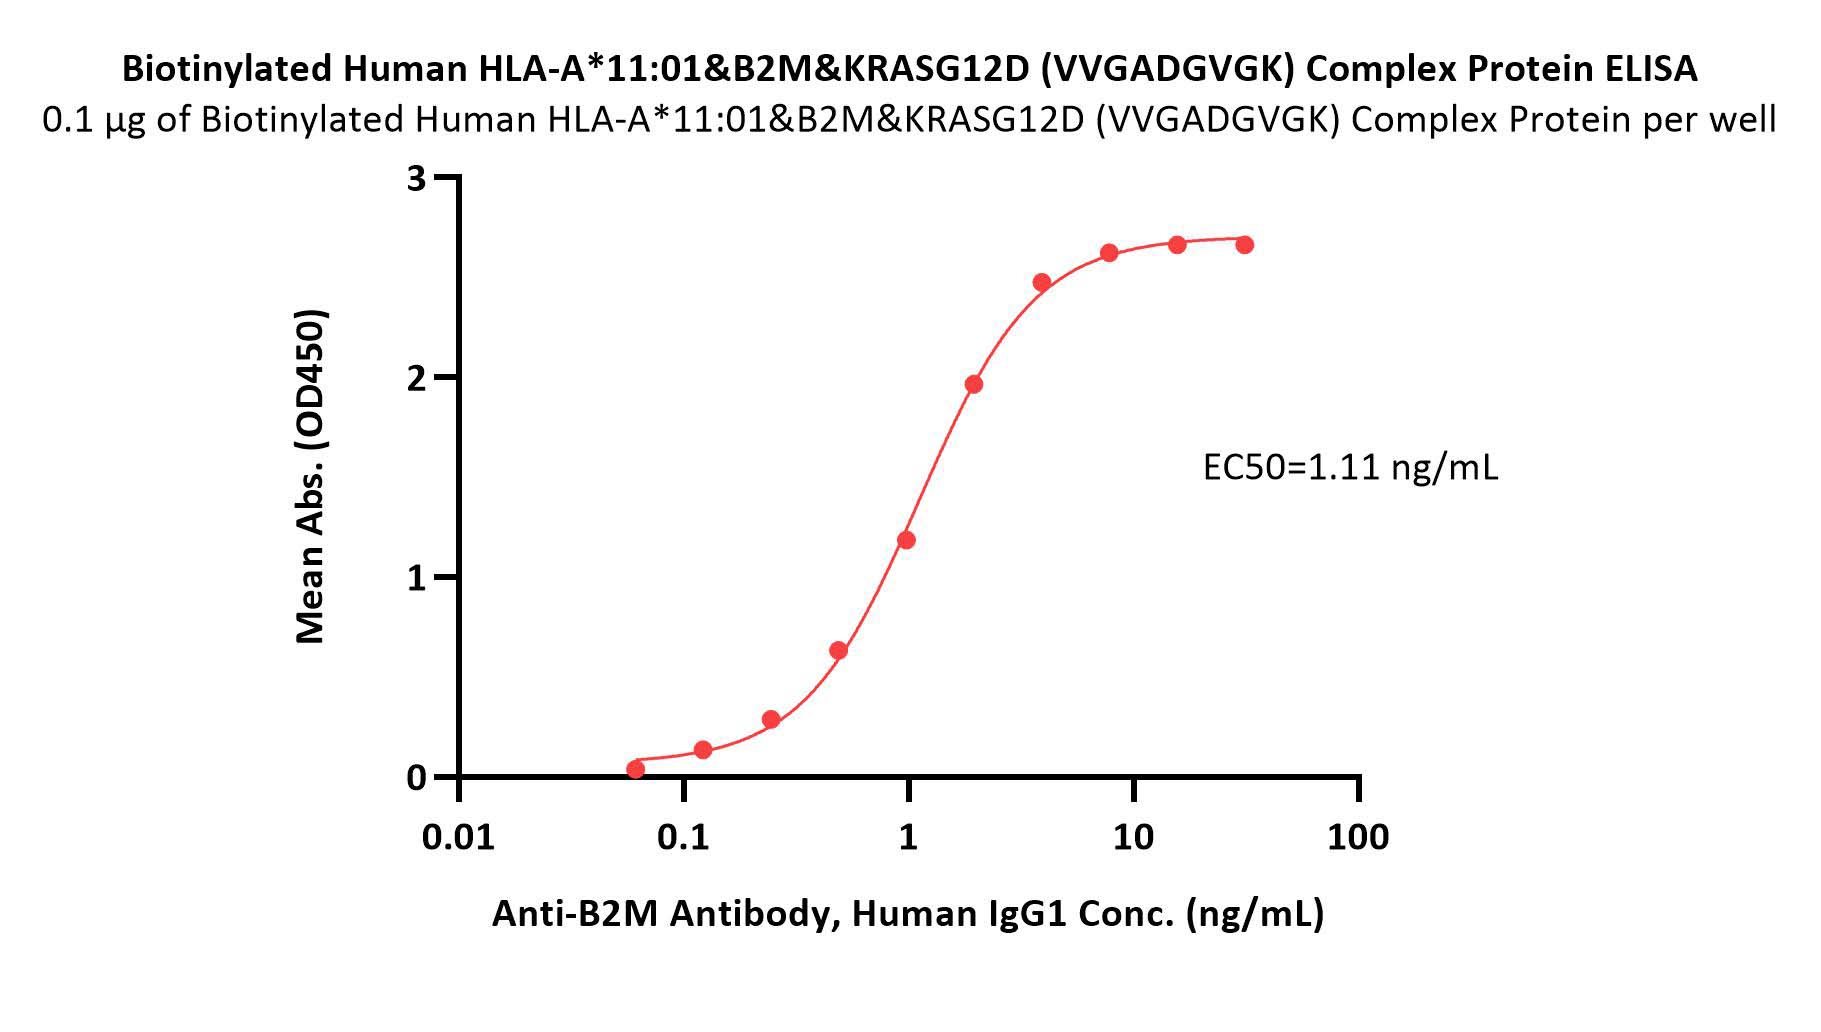 HLA-A*1101 | B2M | KRASG12V (VVGAVGVGK) ELISA